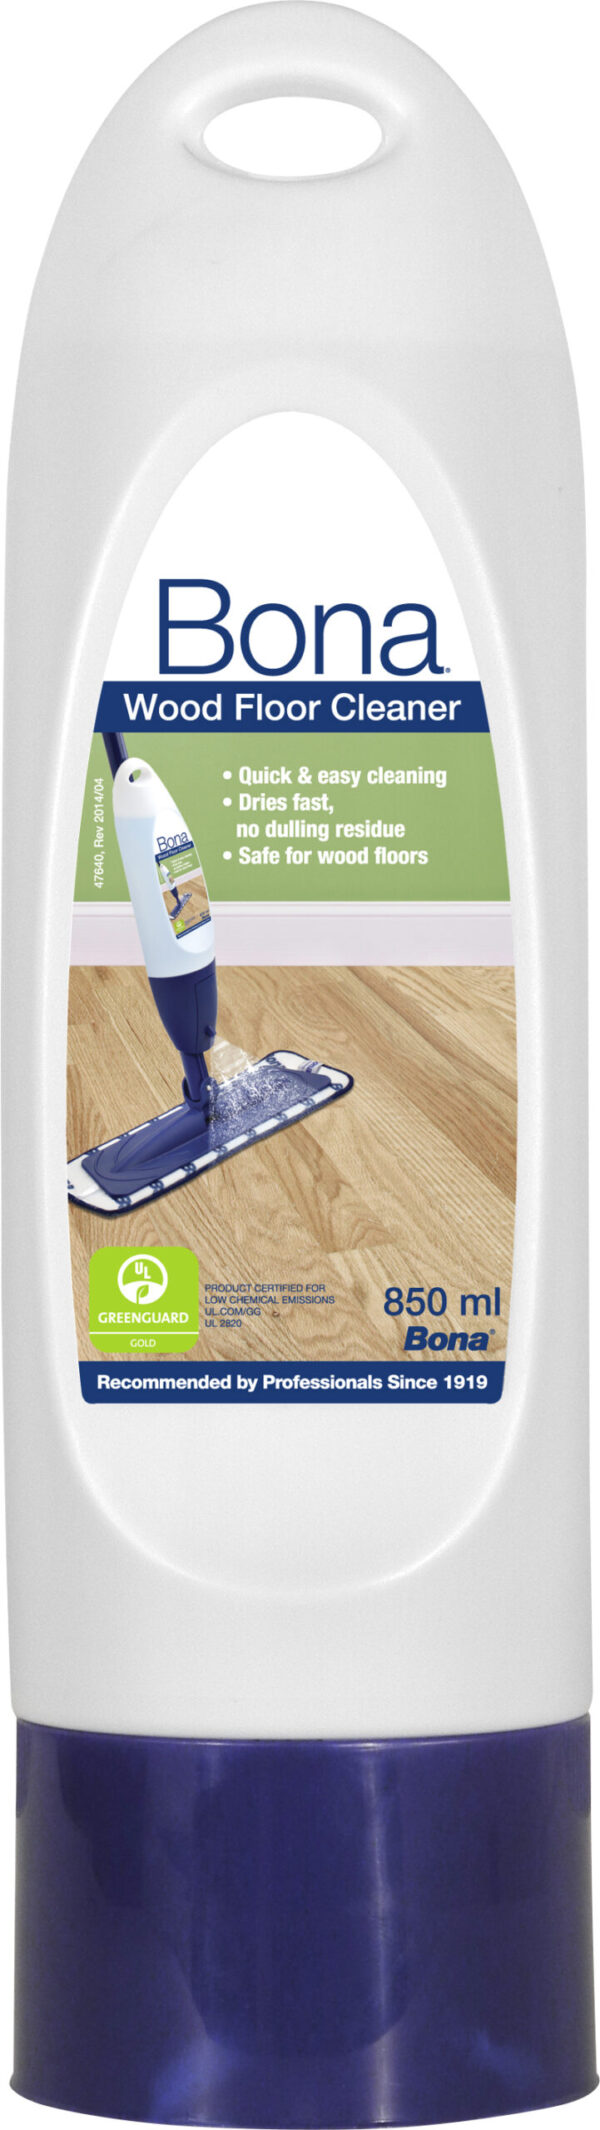 Bona Wood Floor Cleaner Cartridge 850ml ML1 scaled